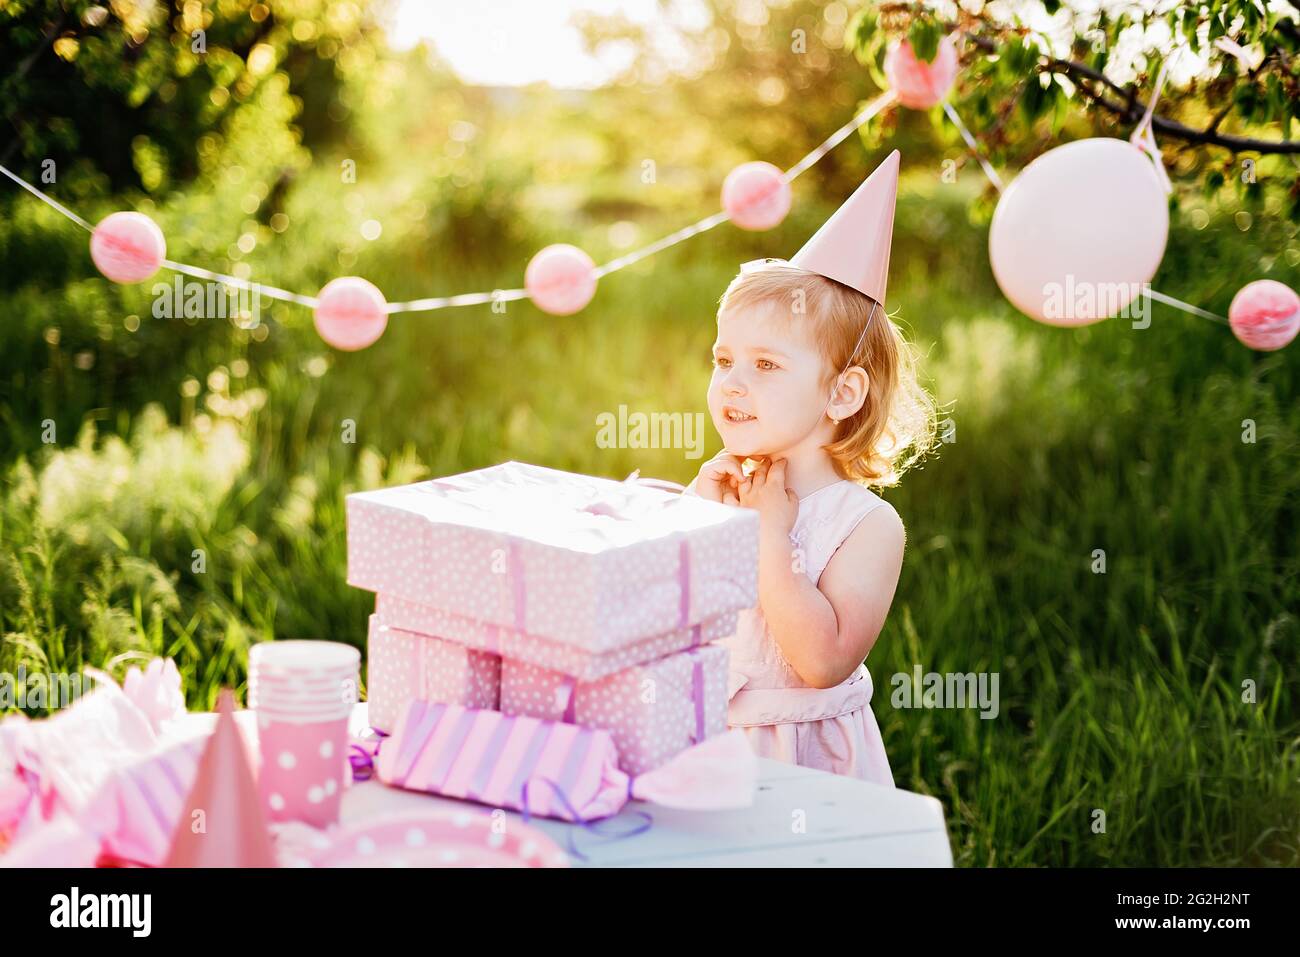 Feliz cumpleaños niña pequeña con caja de regalo en hermoso jardín